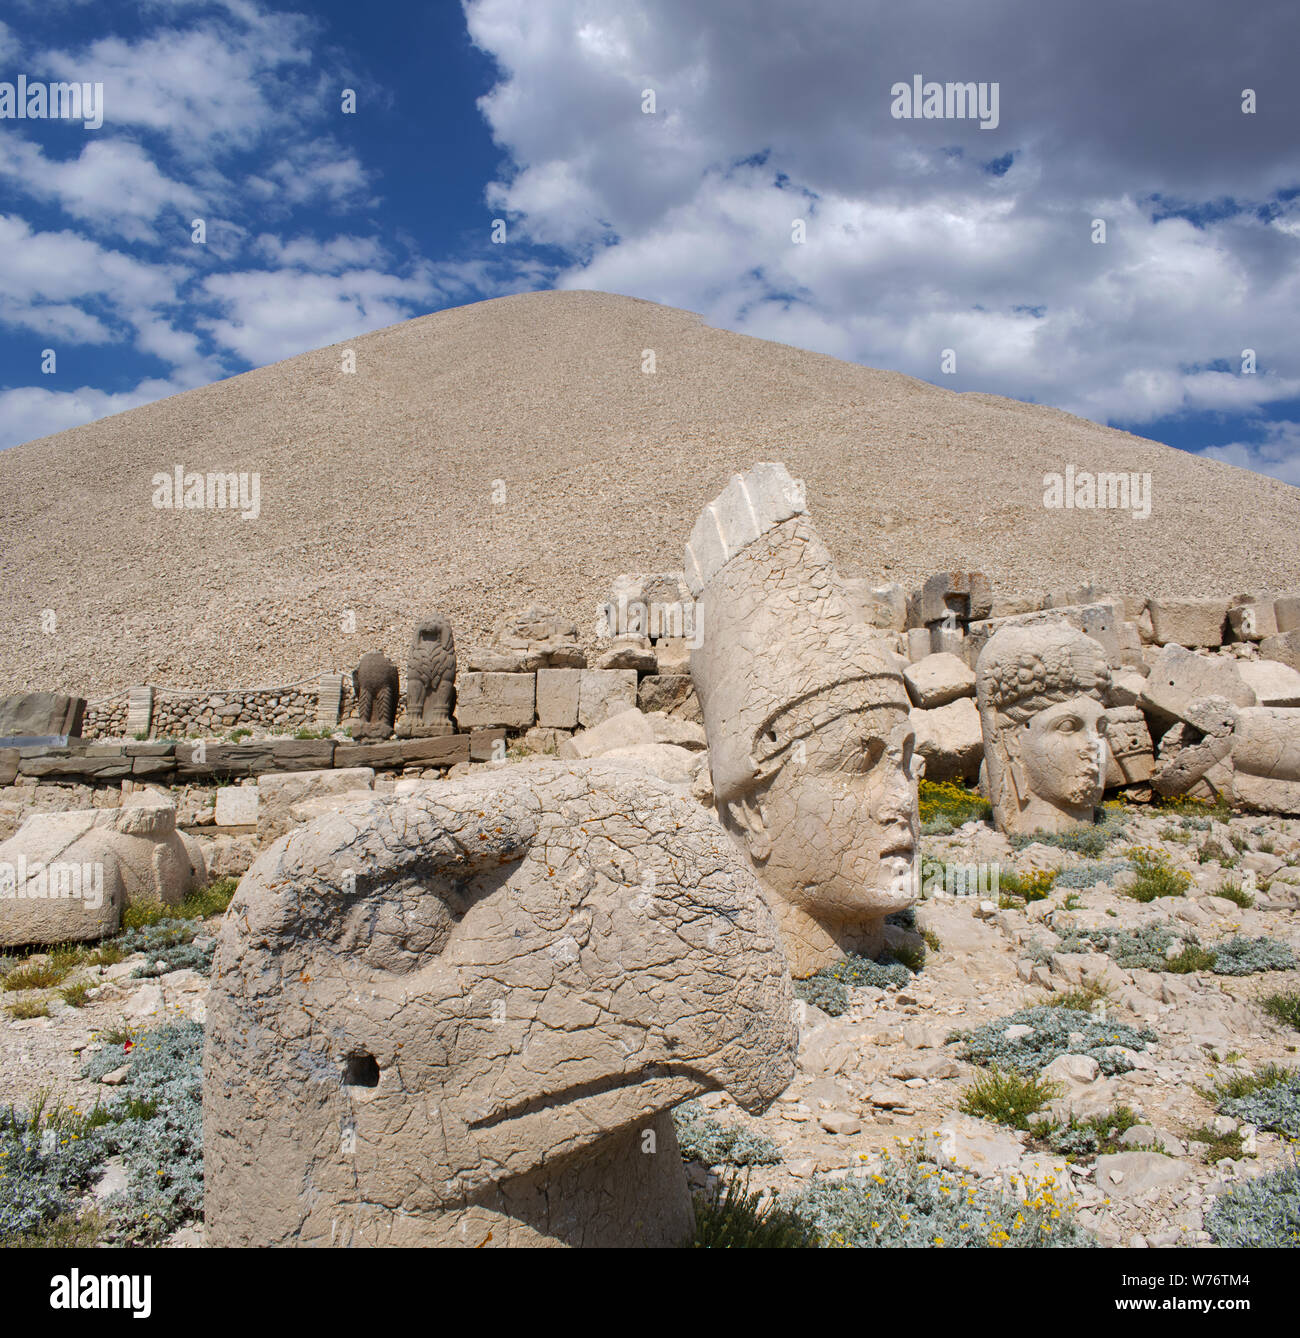 Türkei: Der Westen Terrasse von Nemrut Dagi, Berg Nemrut, wo im Jahr 62 v. Chr. König Antiochos I Theos von Kommagene ein Grab - Heiligtum von riesigen Statuen flankiert gebaut Stockfoto